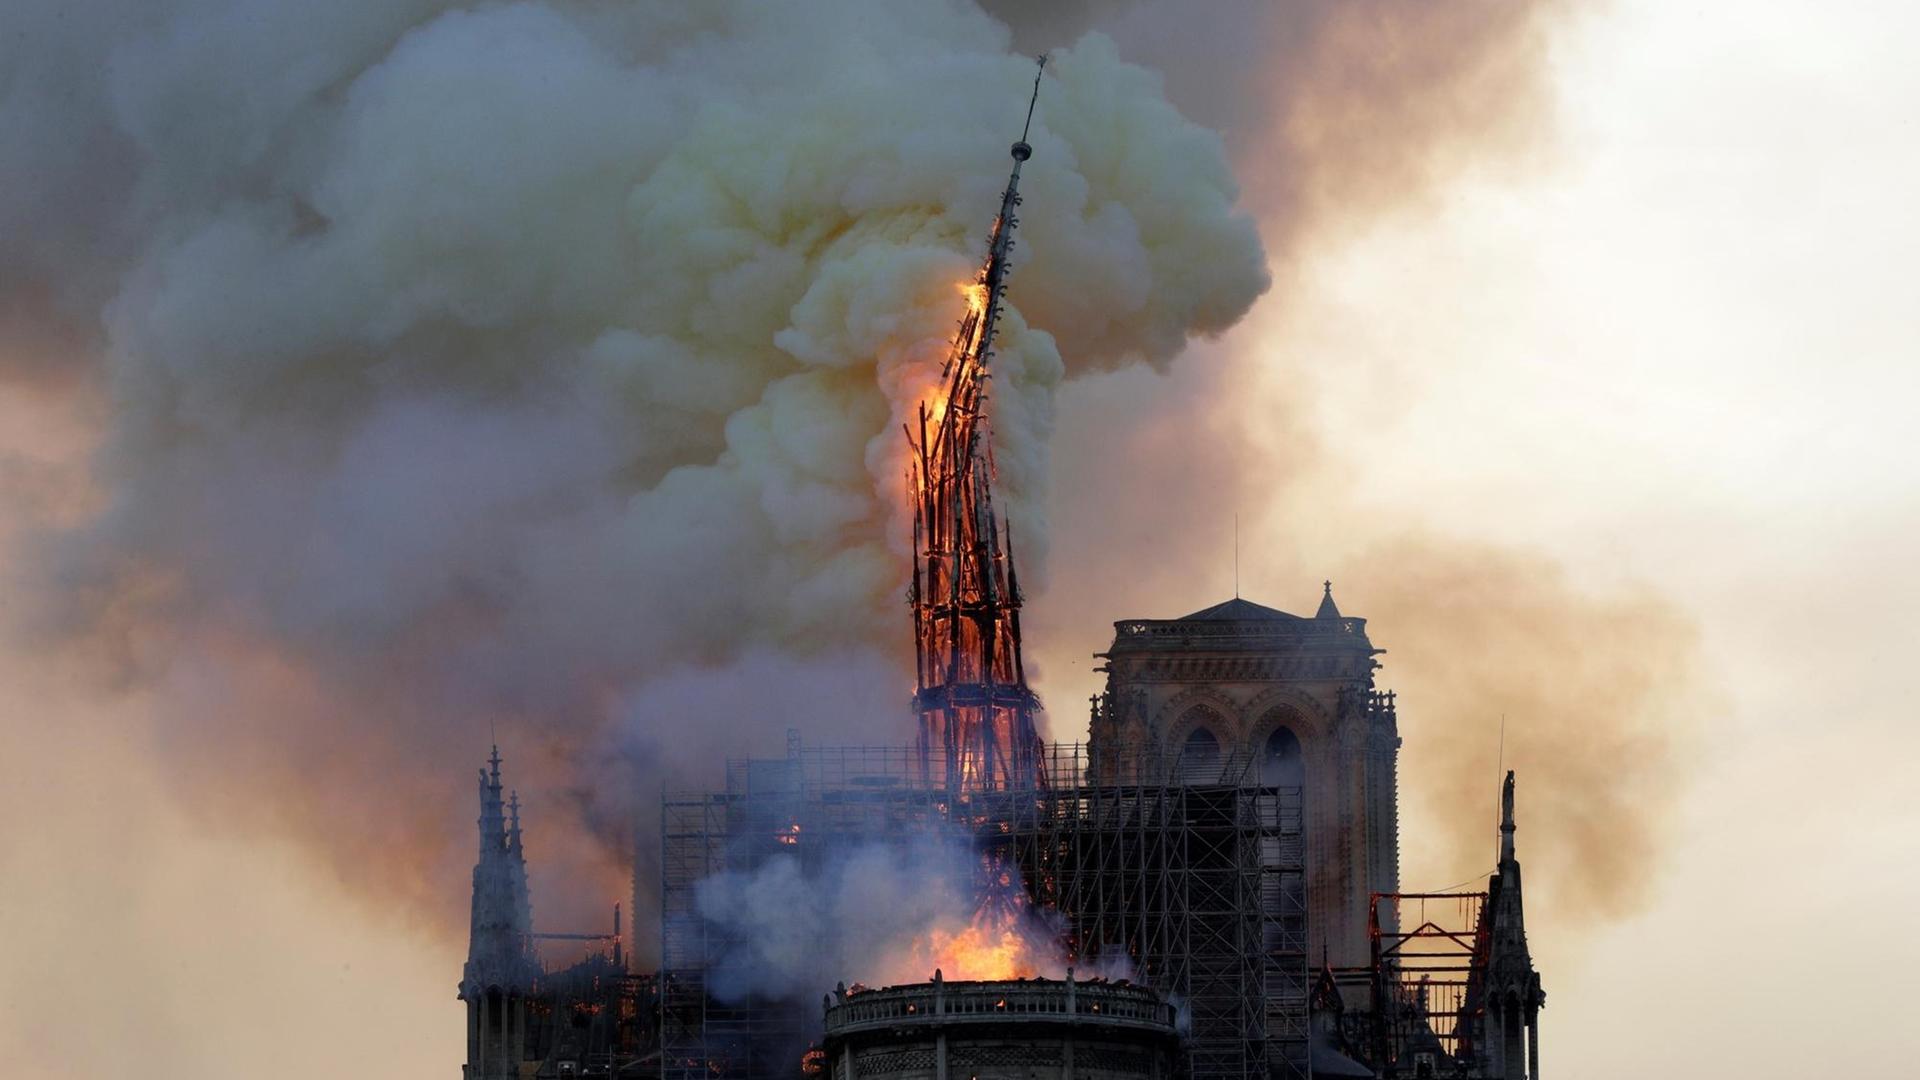 Der Spitzturm von Notre-Dame fällt während des Brandes um